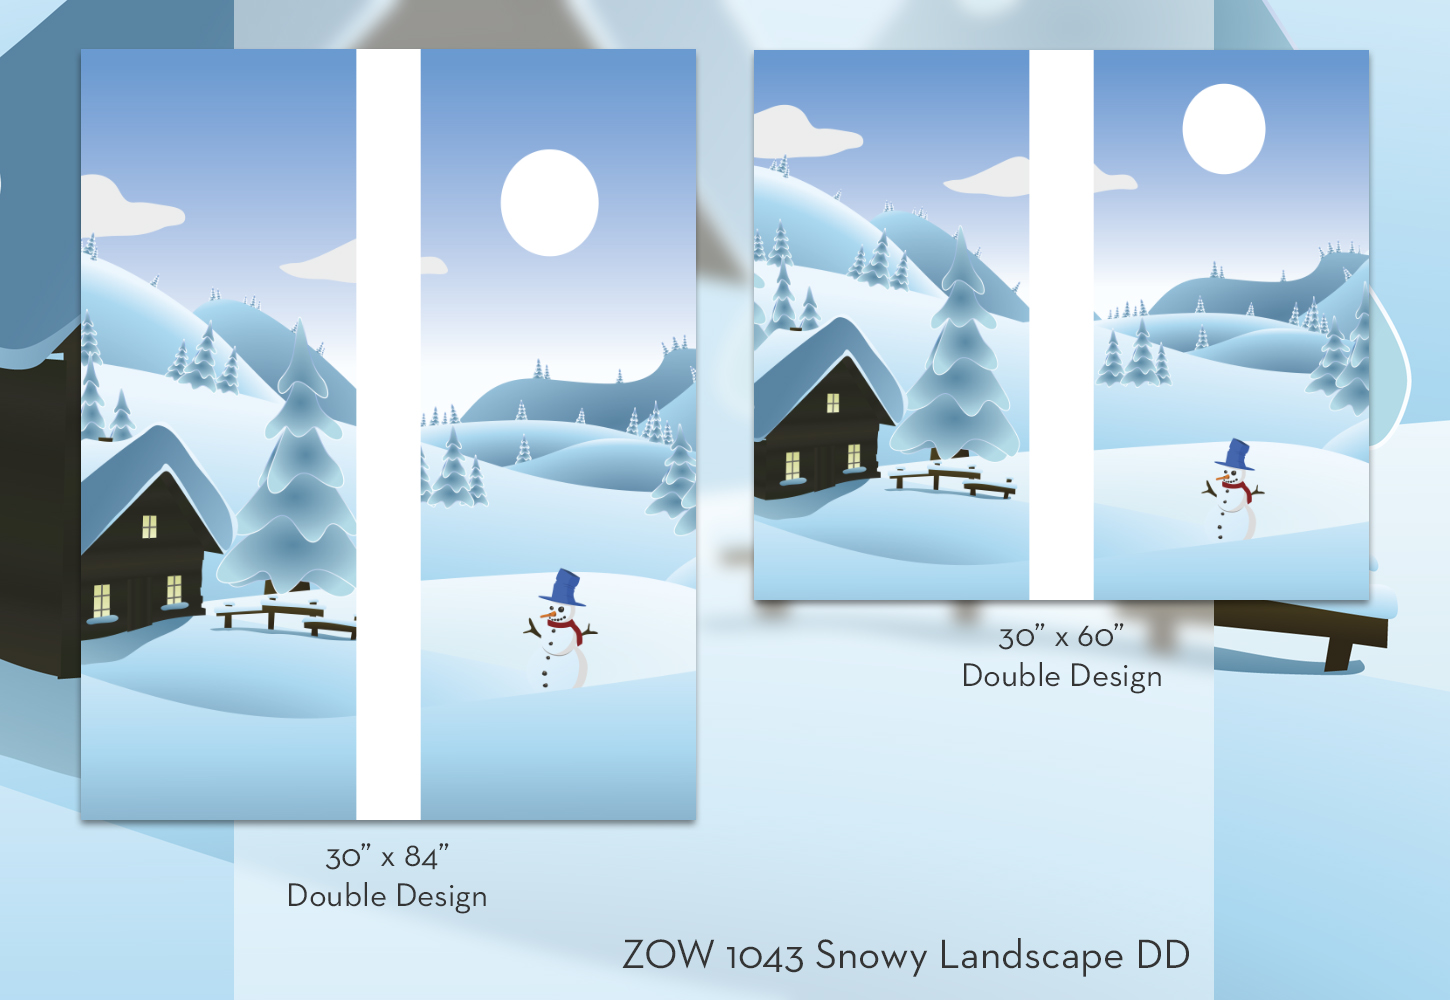 ZOW 1043 Snowy Landscape DD